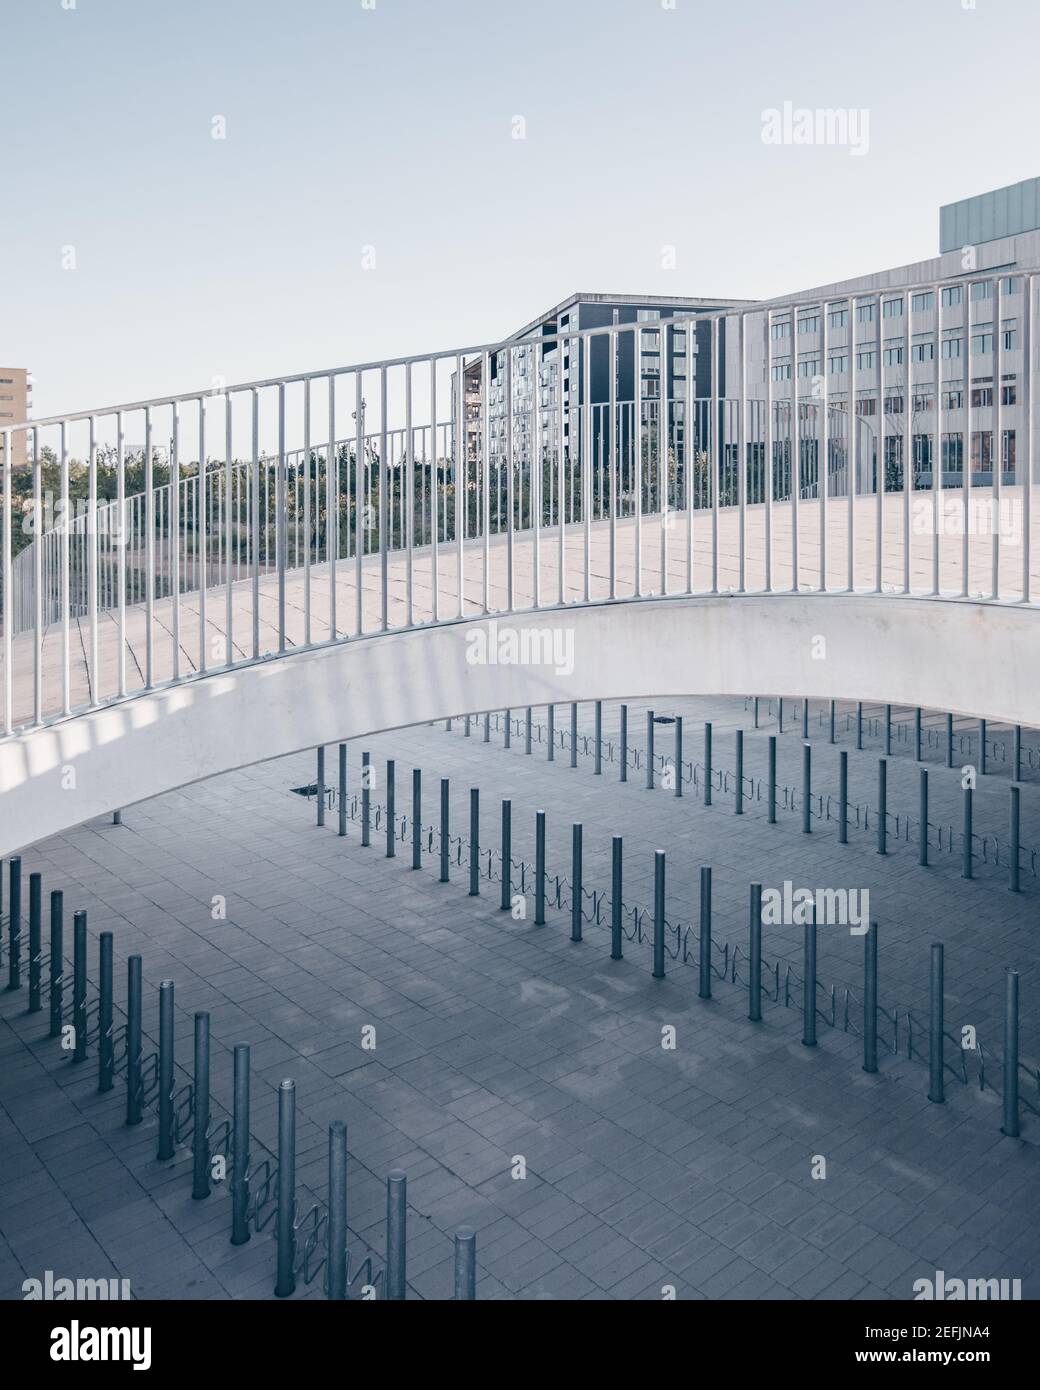 Kopenhagen, Dänemark - 29. Juni 2019. Karen Blixens Plads ist ein neuer urbaner Raum an der Universität Kopenhagen. Die plaza liegt zwischen den Universitätsgebäuden und dem Naturschutzgebiet Amager Fælled und ist eine Mischung aus Park und Platz mit Hügeln und Tälern und Platz für 2.100 Fahrradstellplätze unter den Hügeln. Stockfoto